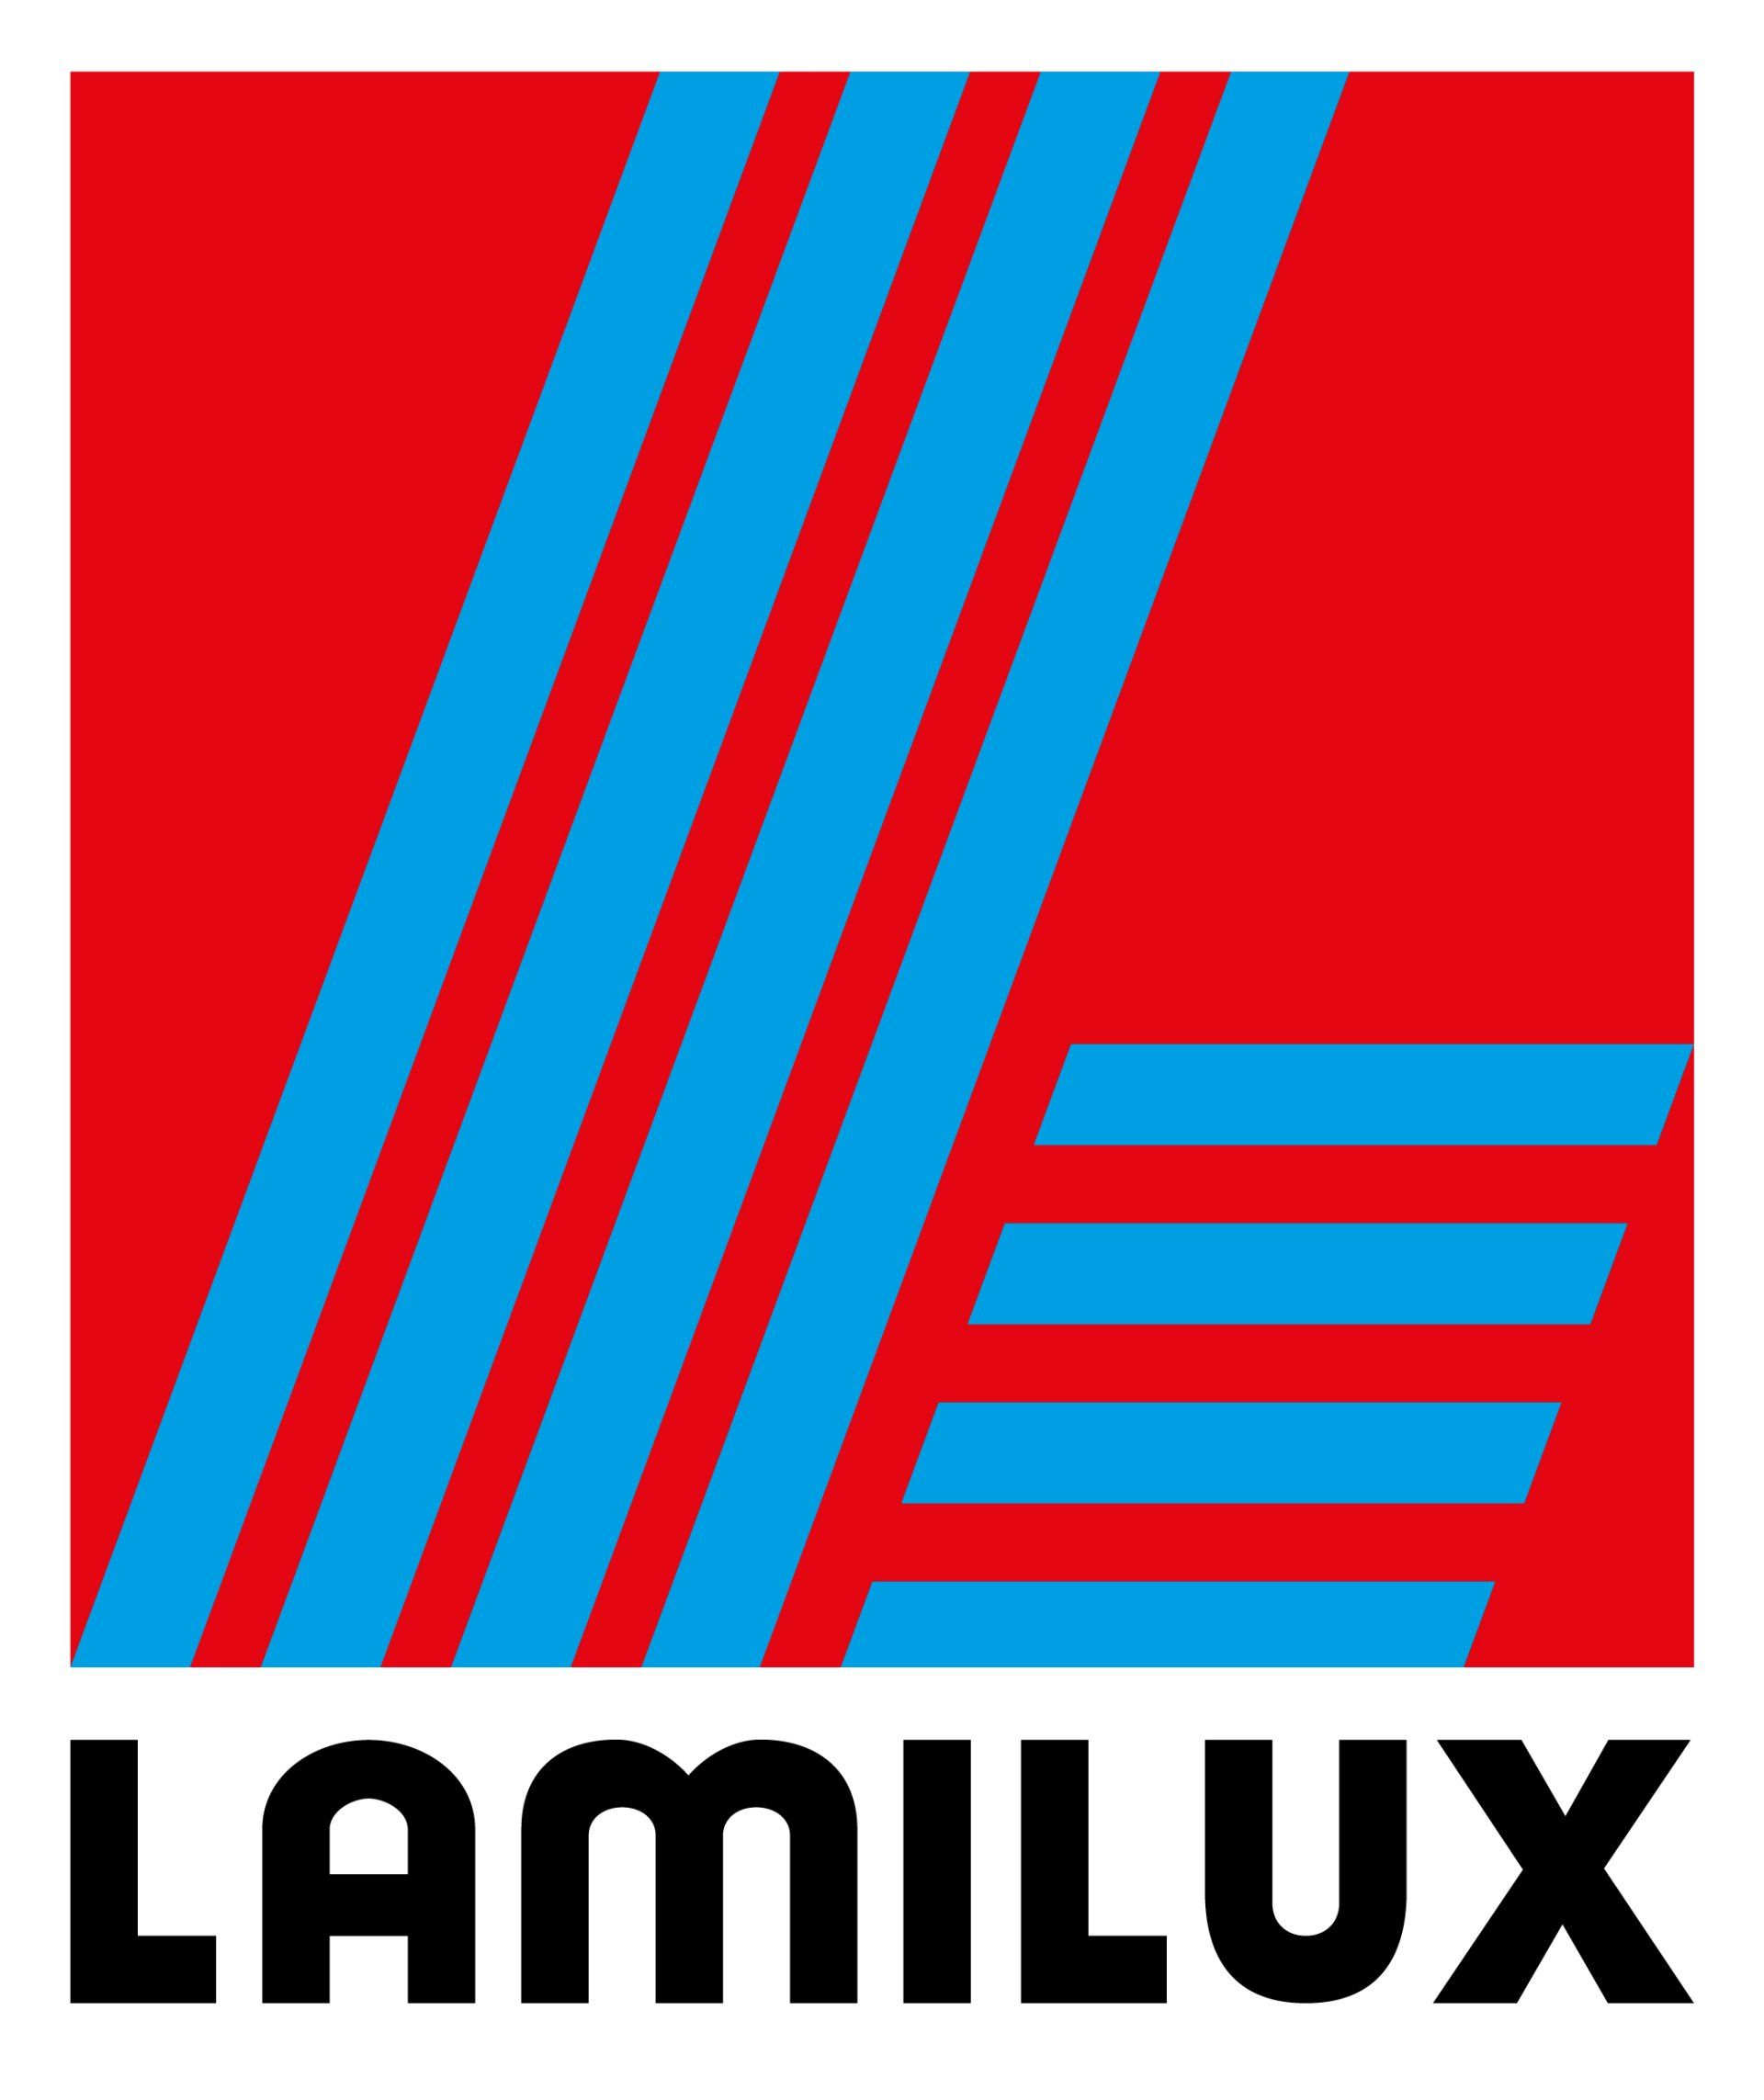 Logo Lamilux